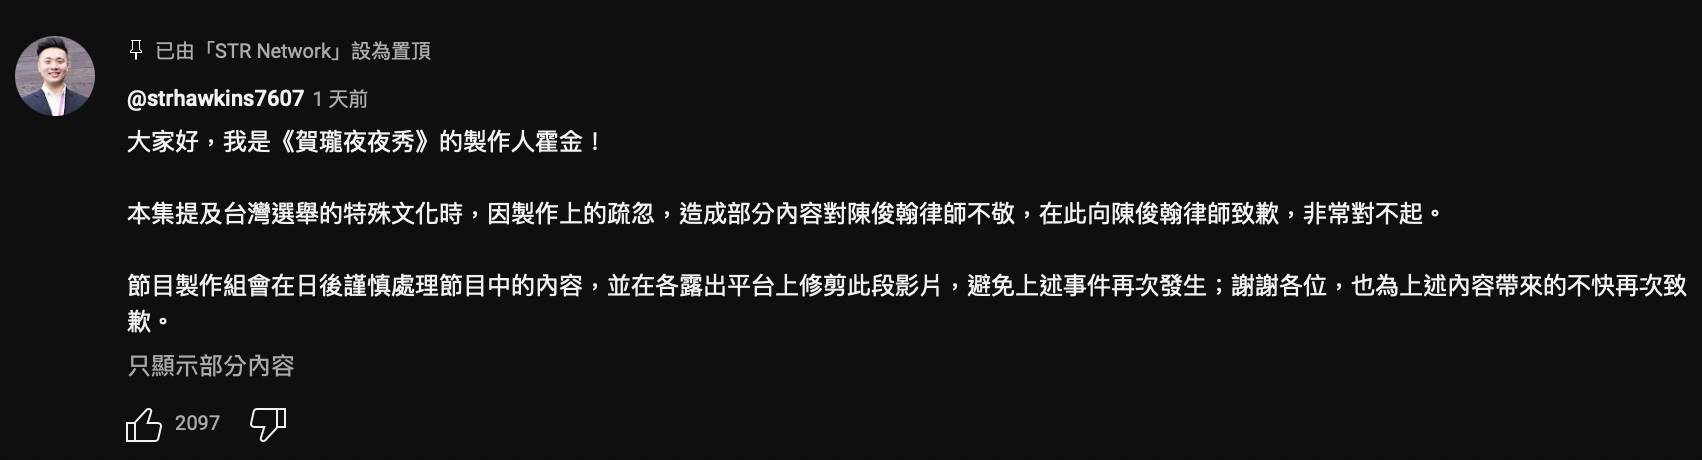 《賀瓏夜夜秀》製作人霍金針對王志安於節目歧視性發言在留言區置頂道歉。